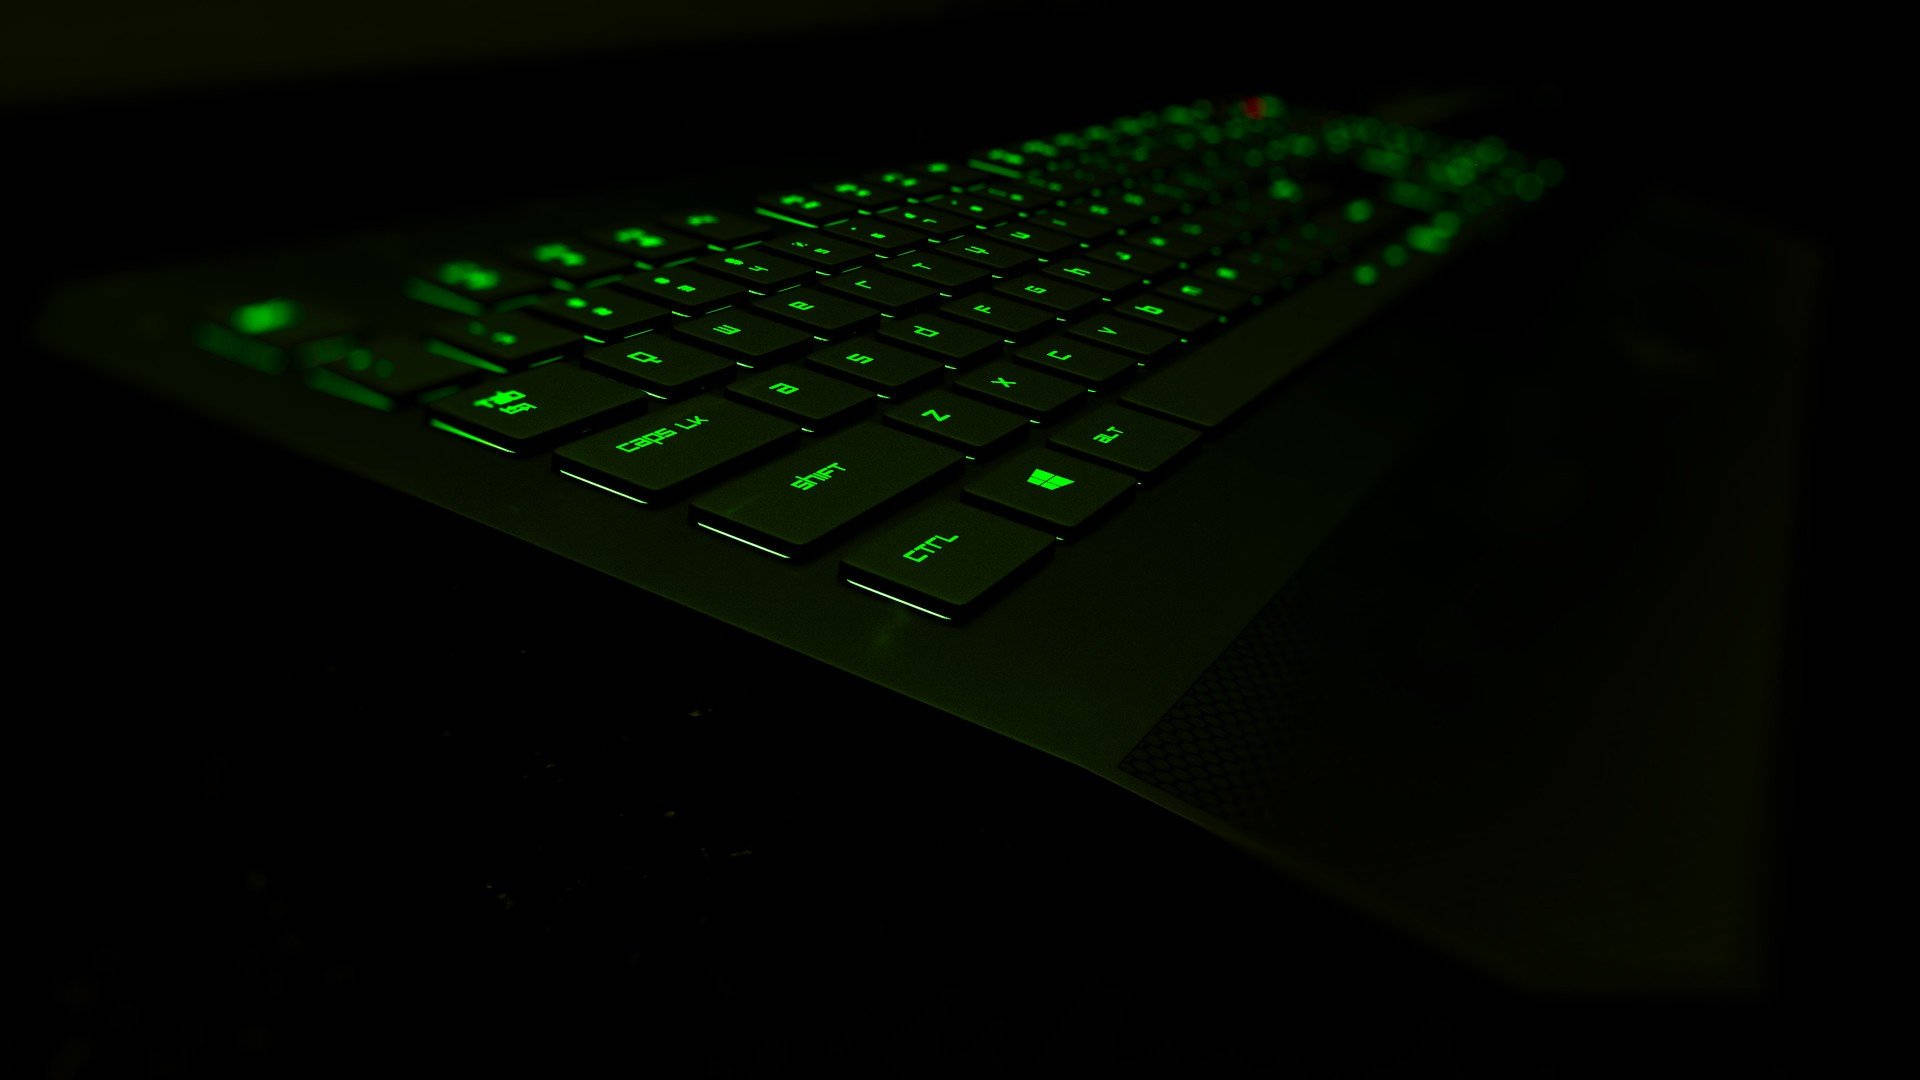 Green Neon Light Computer Keyboard Wallpaper